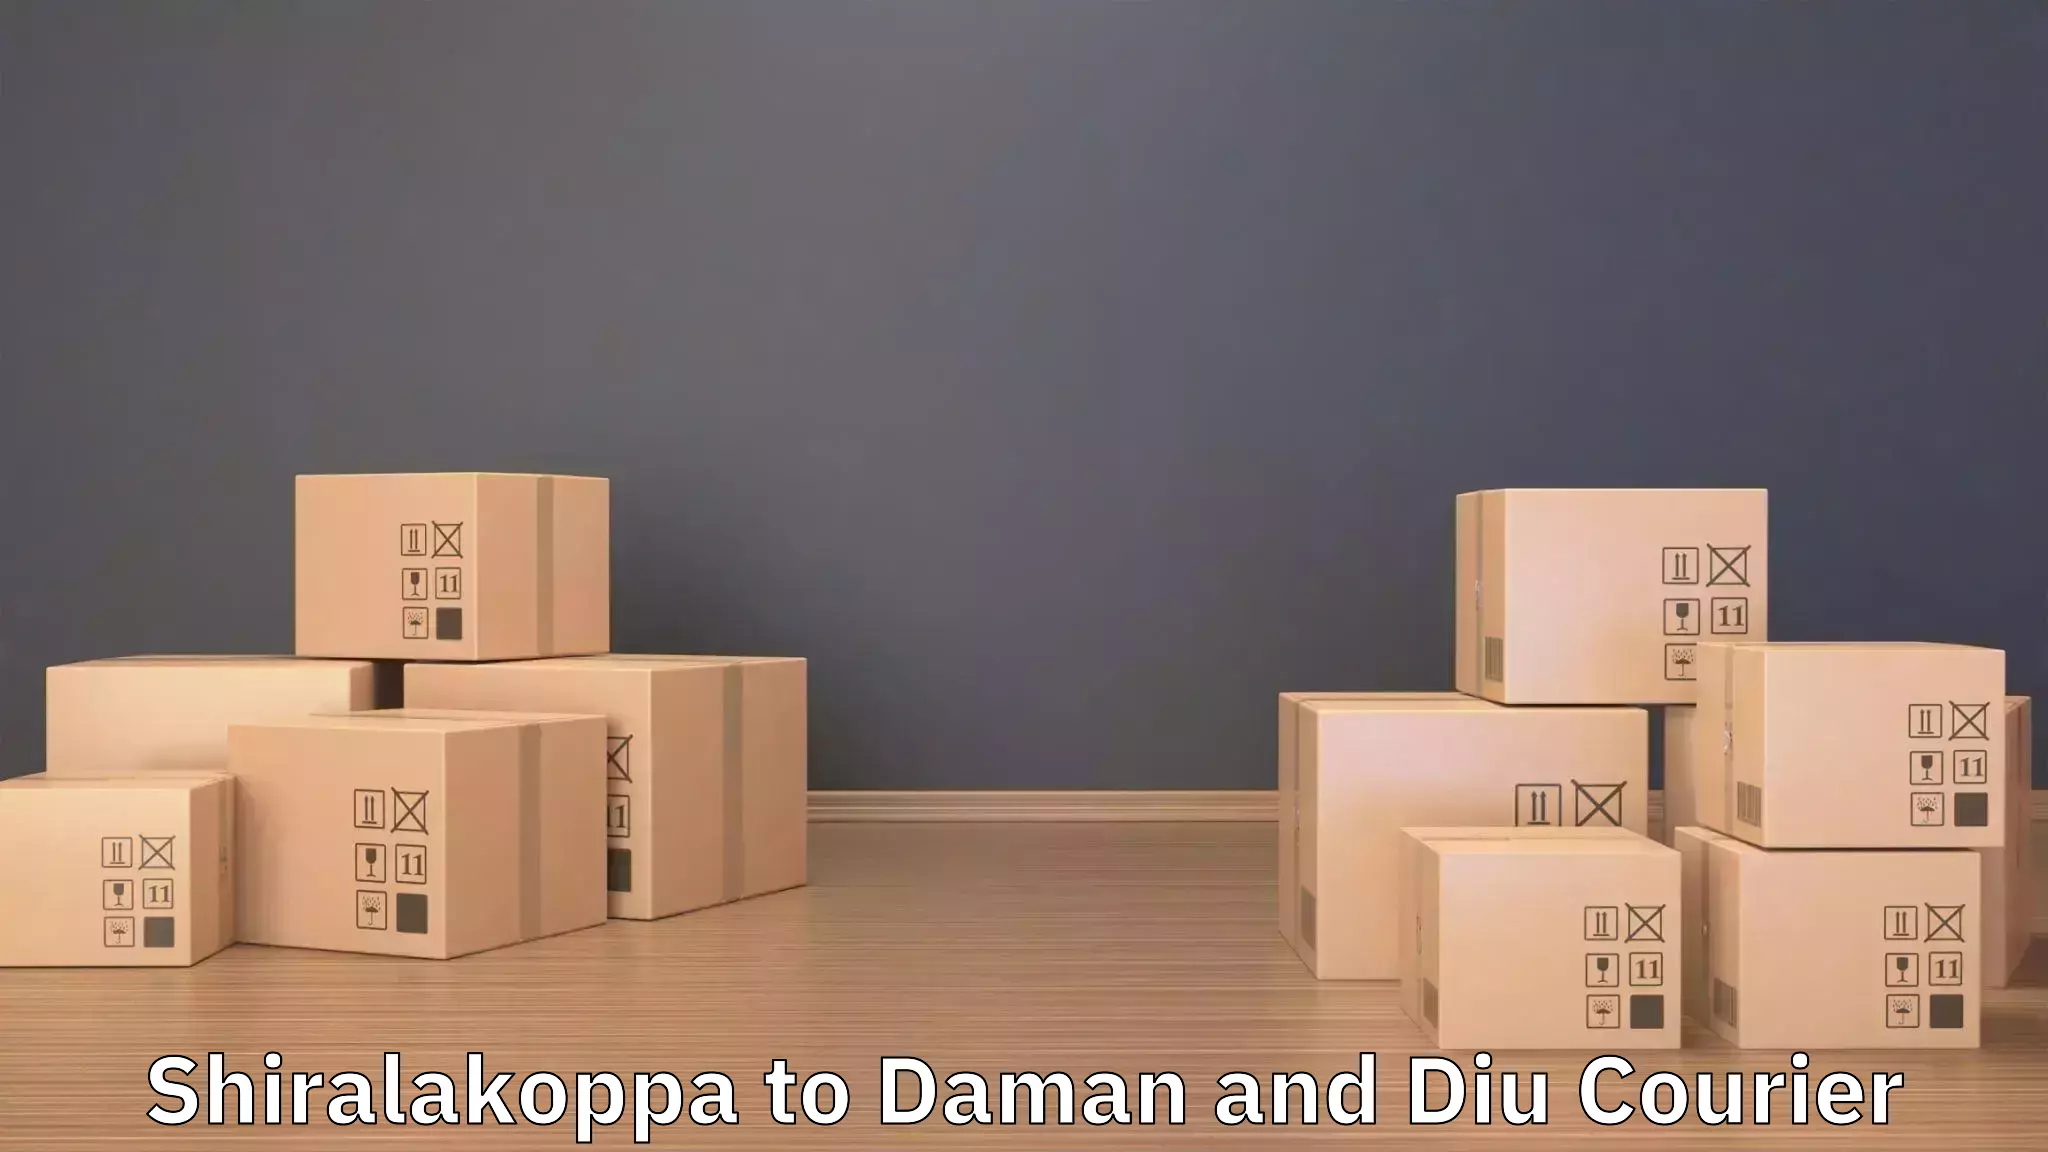 Efficient moving company Shiralakoppa to Diu